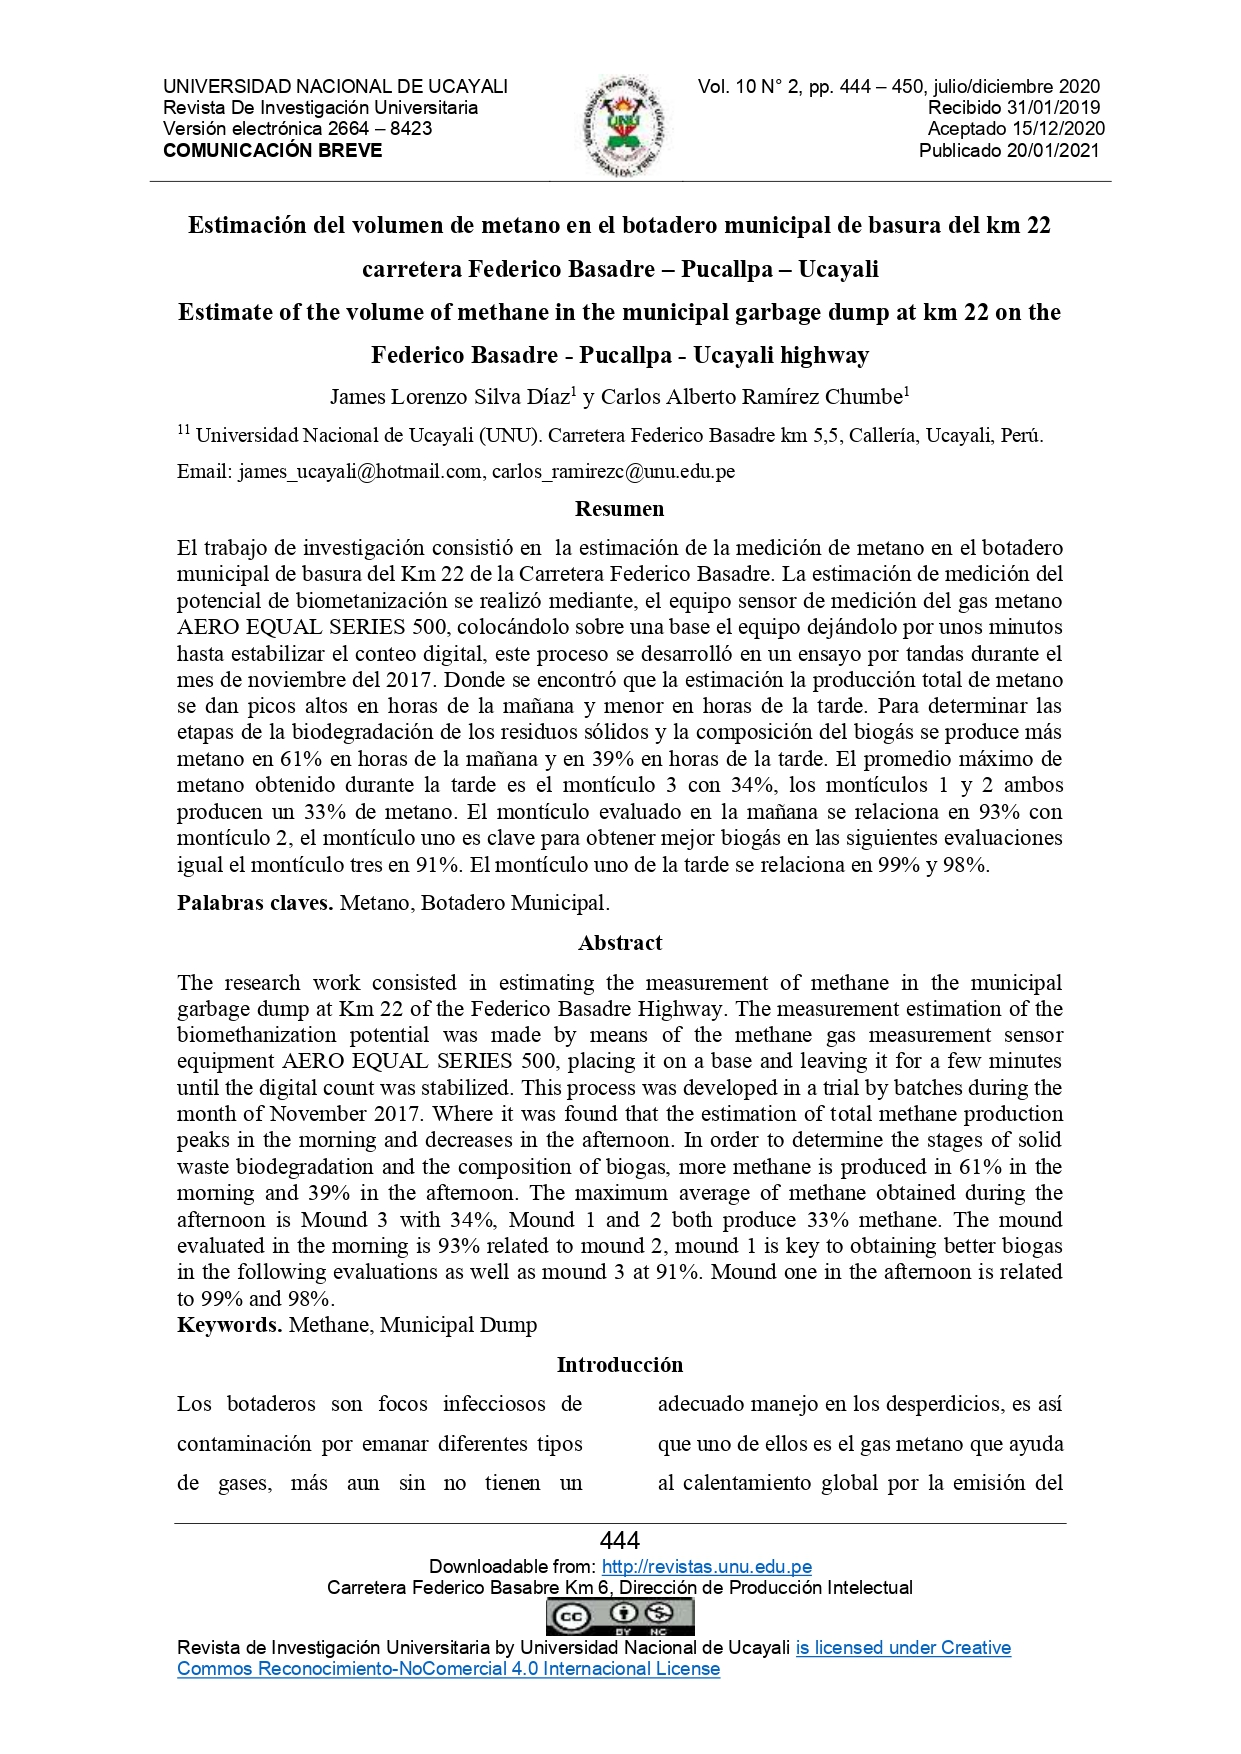 Nivel óptimo de bioecol probac para la descomposición del escobajo de palma aceitera (Elaeis guineensis jacq) y nivel nutricional del compost en Ucayali, Perú